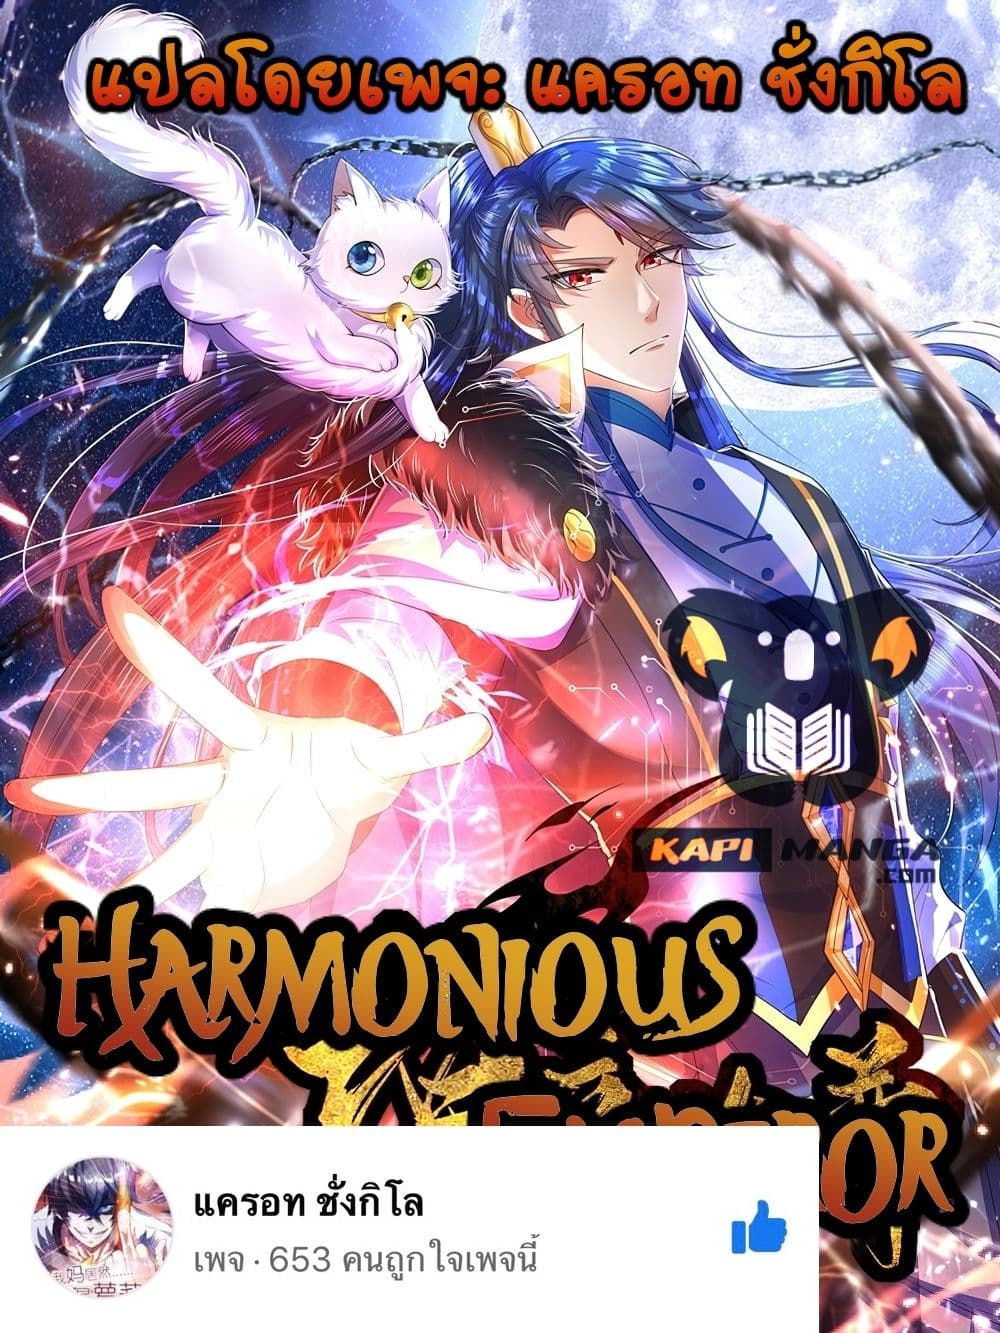 Harmonious Emperor is respected 98 01